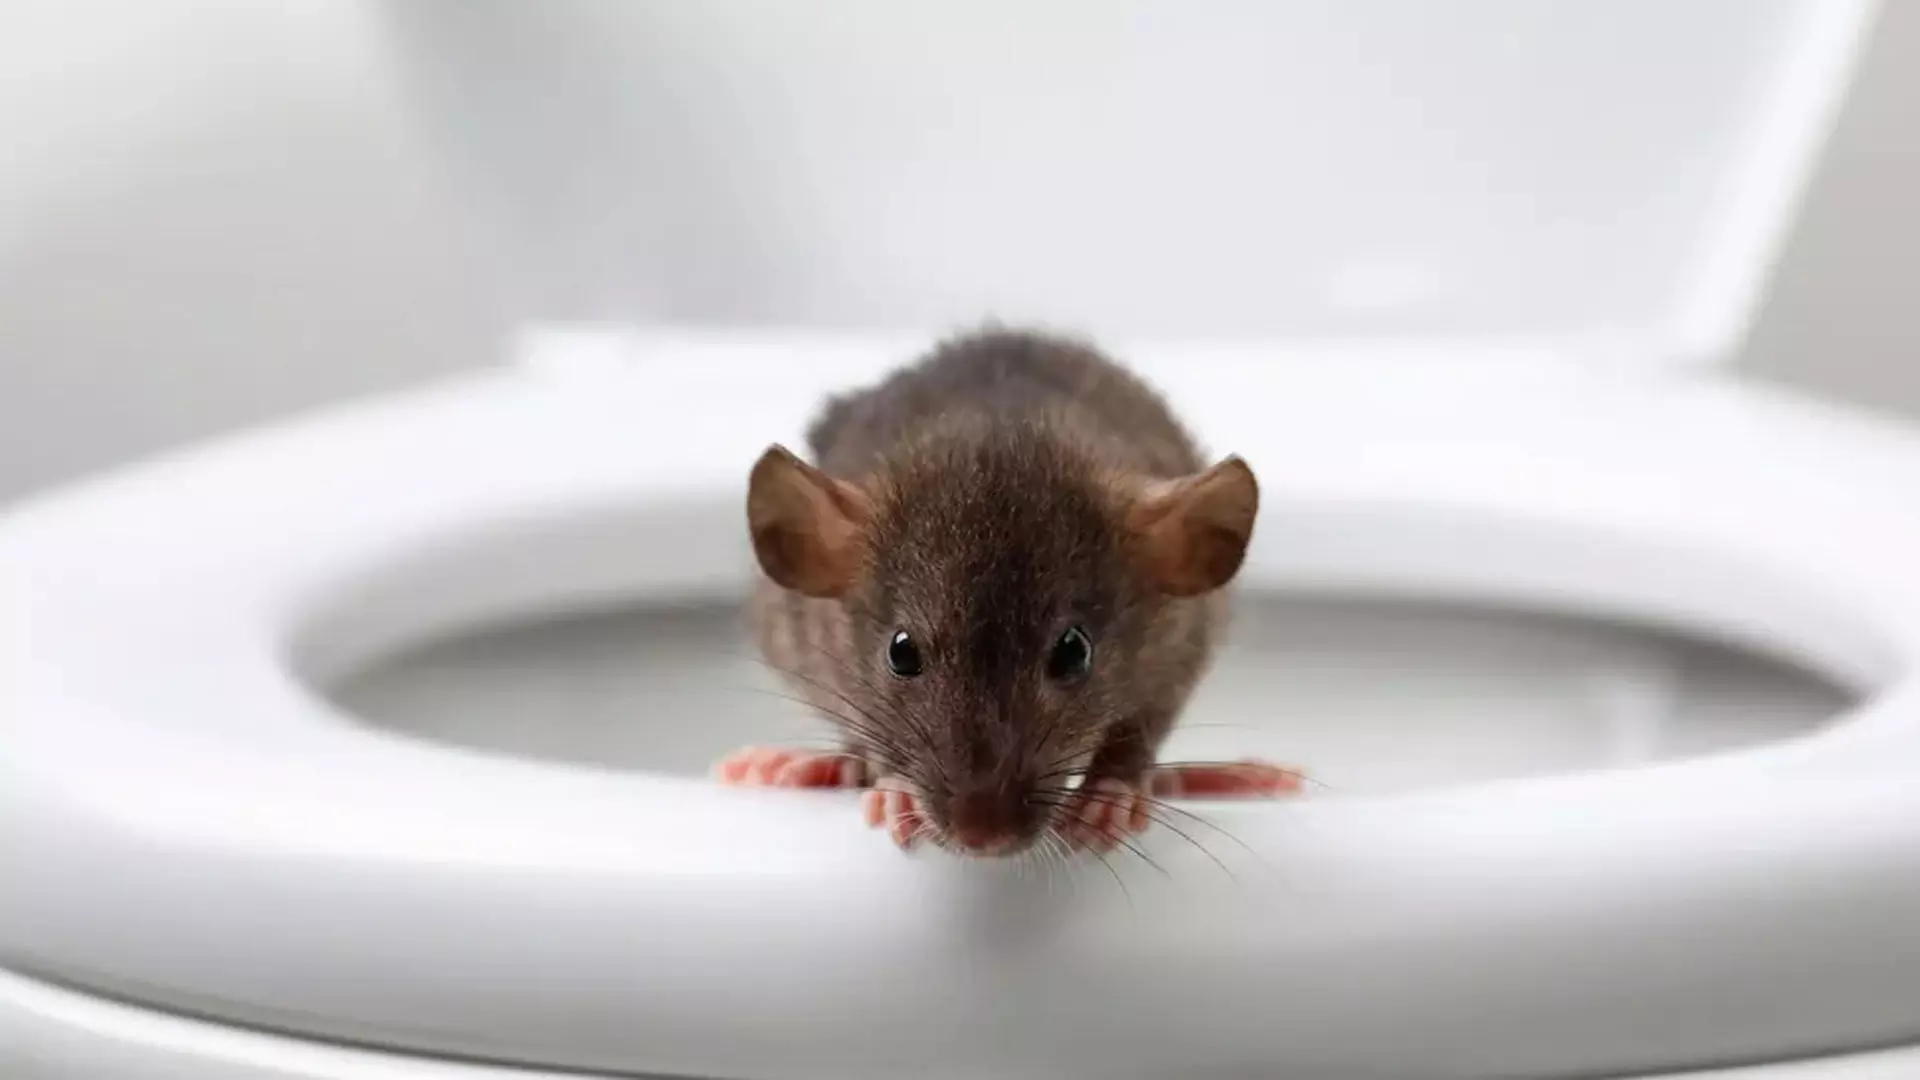 टॉयलेट में चूहे के काटने से शख्स की हालत ख़राब, अस्पताल में भर्ती